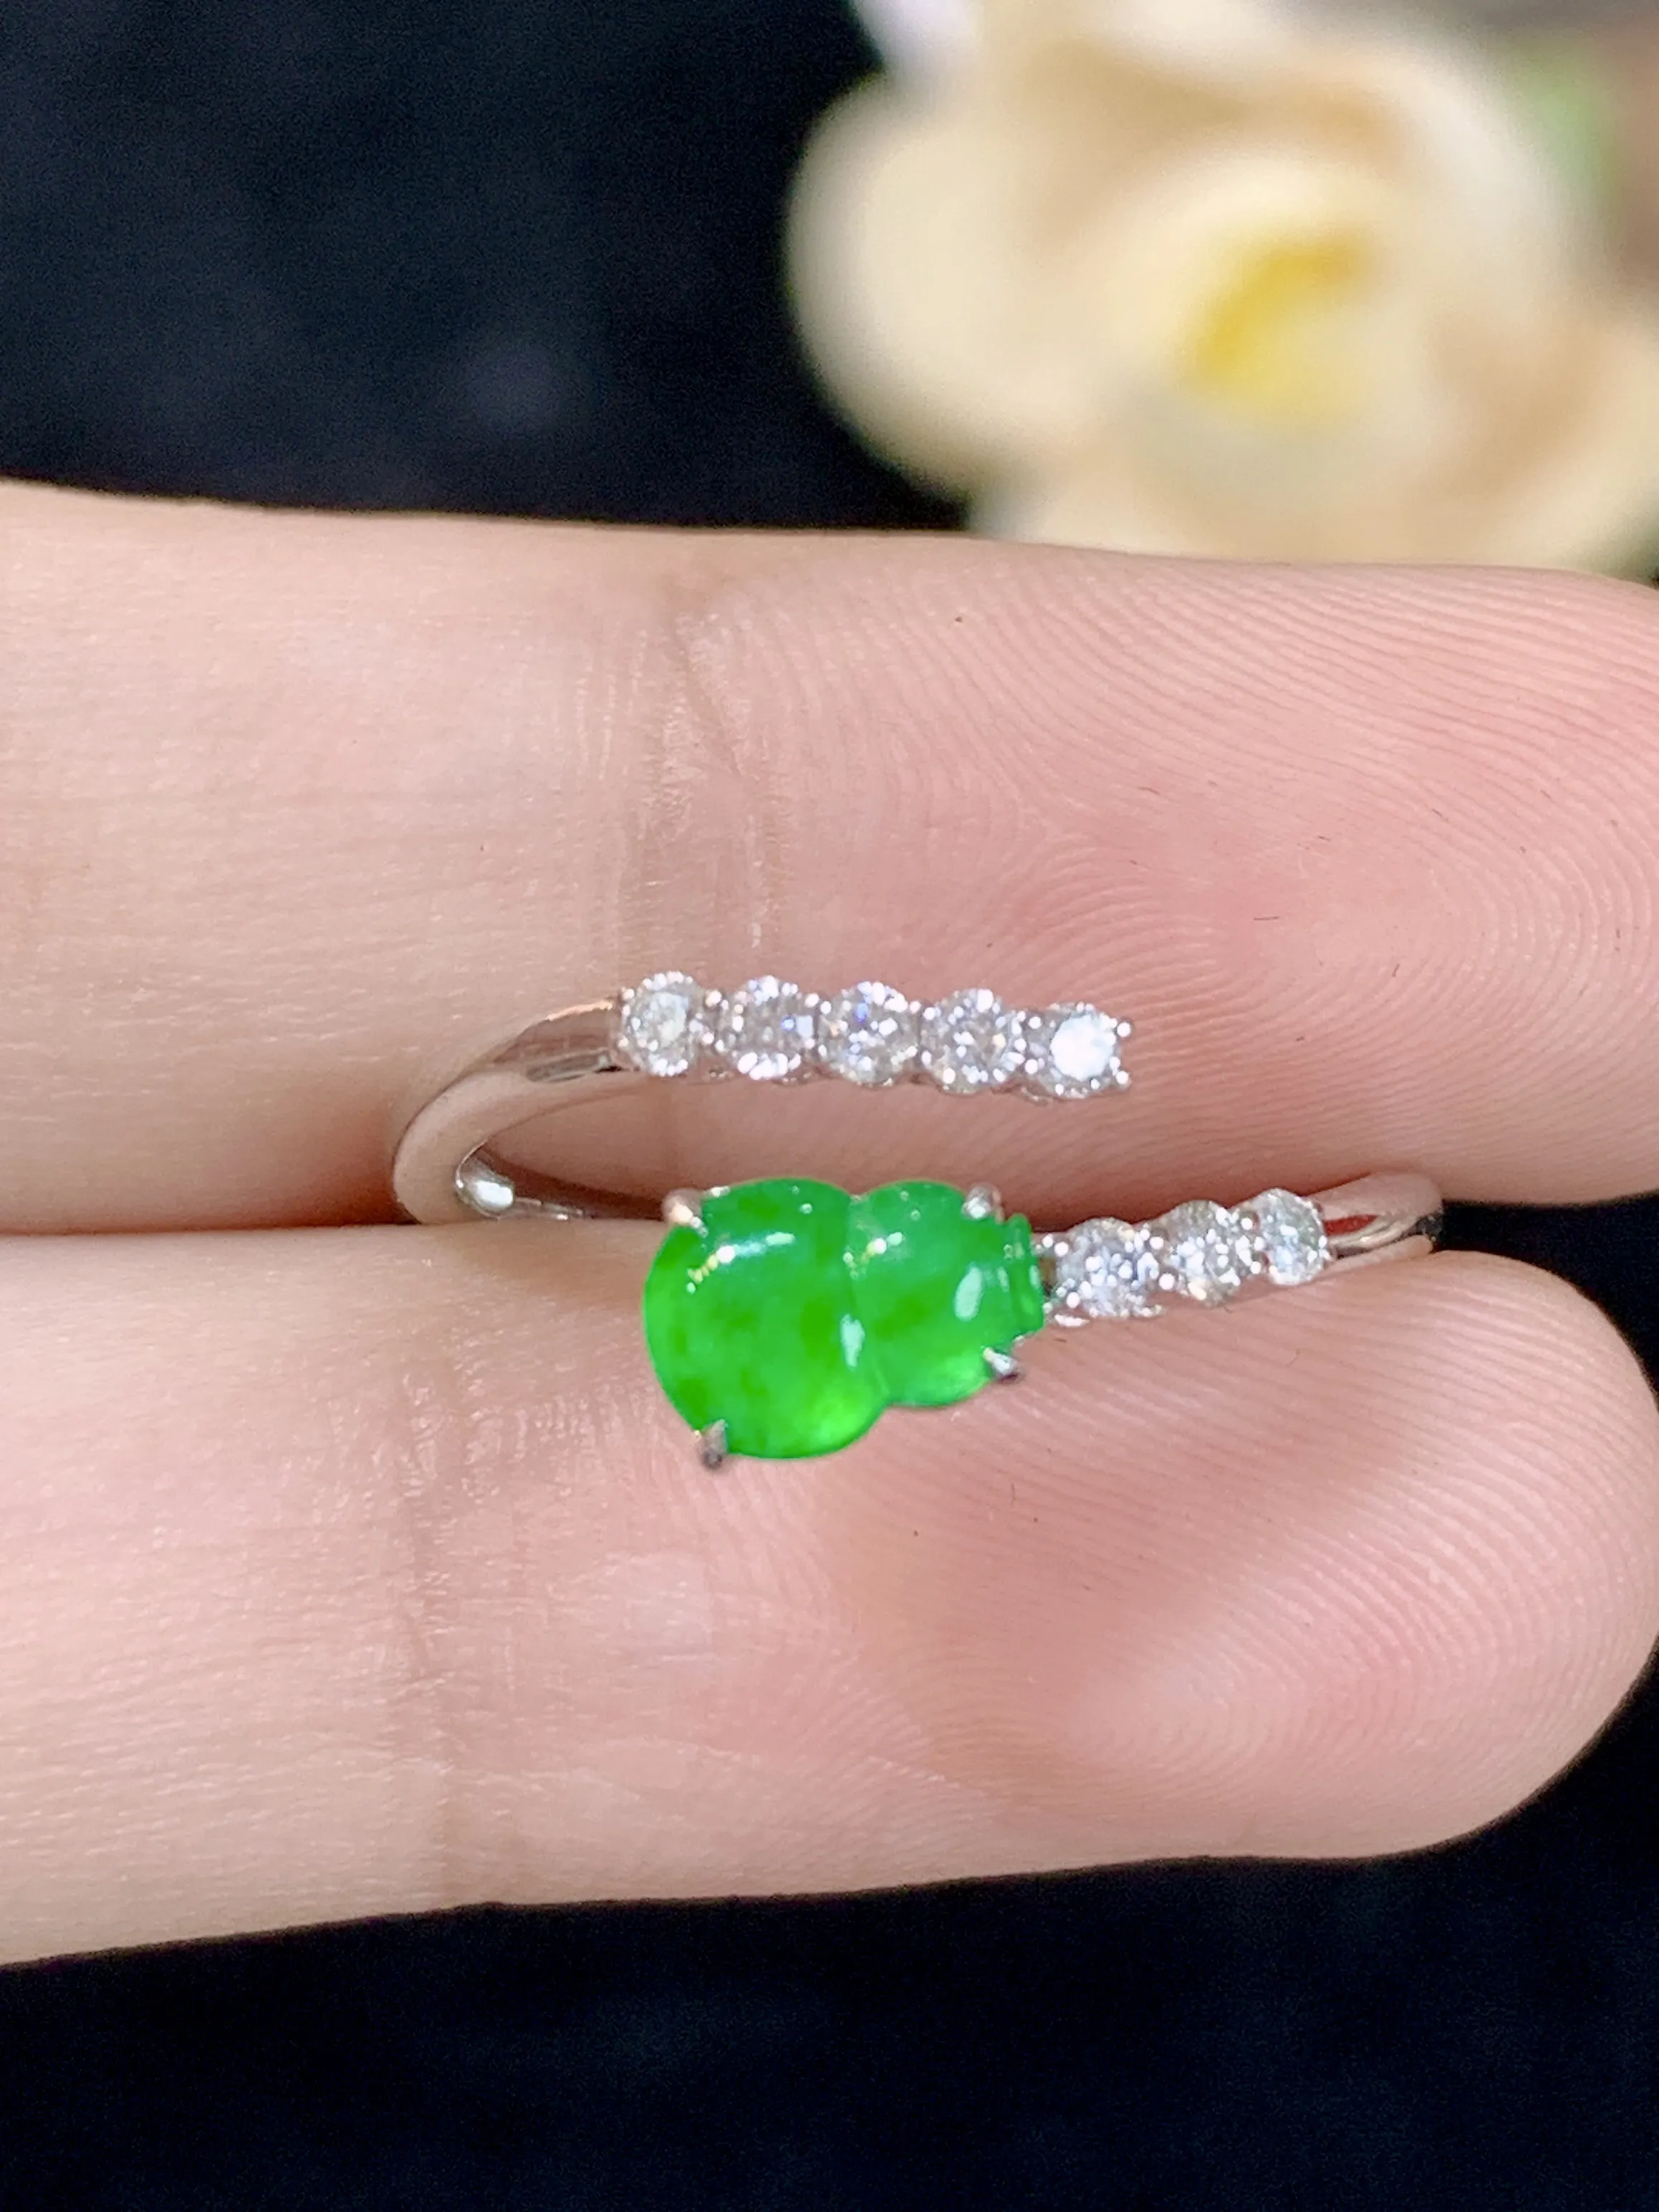 满绿葫芦戒指18k金镶嵌，颜色清爽，水润，整体规格：11.9-8.2-3.4